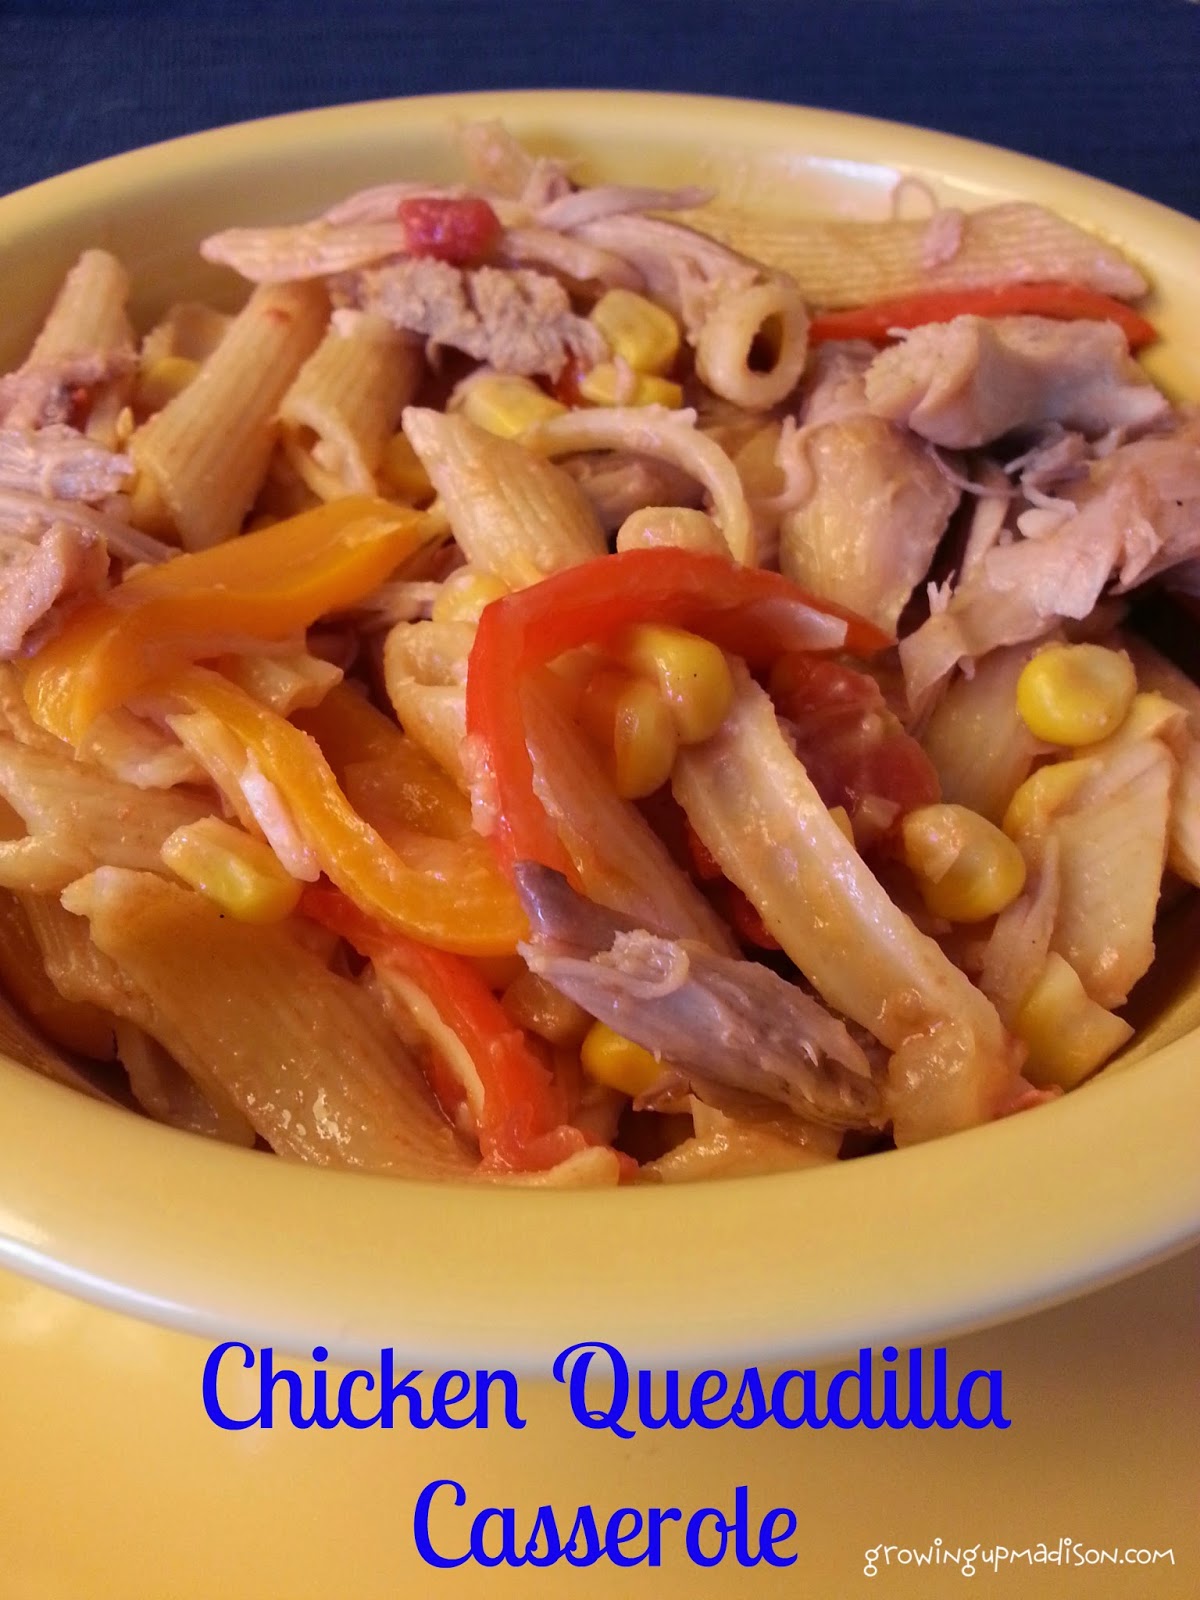 Chicken Quesadilla Casserole - Recipe - AnnMarie John